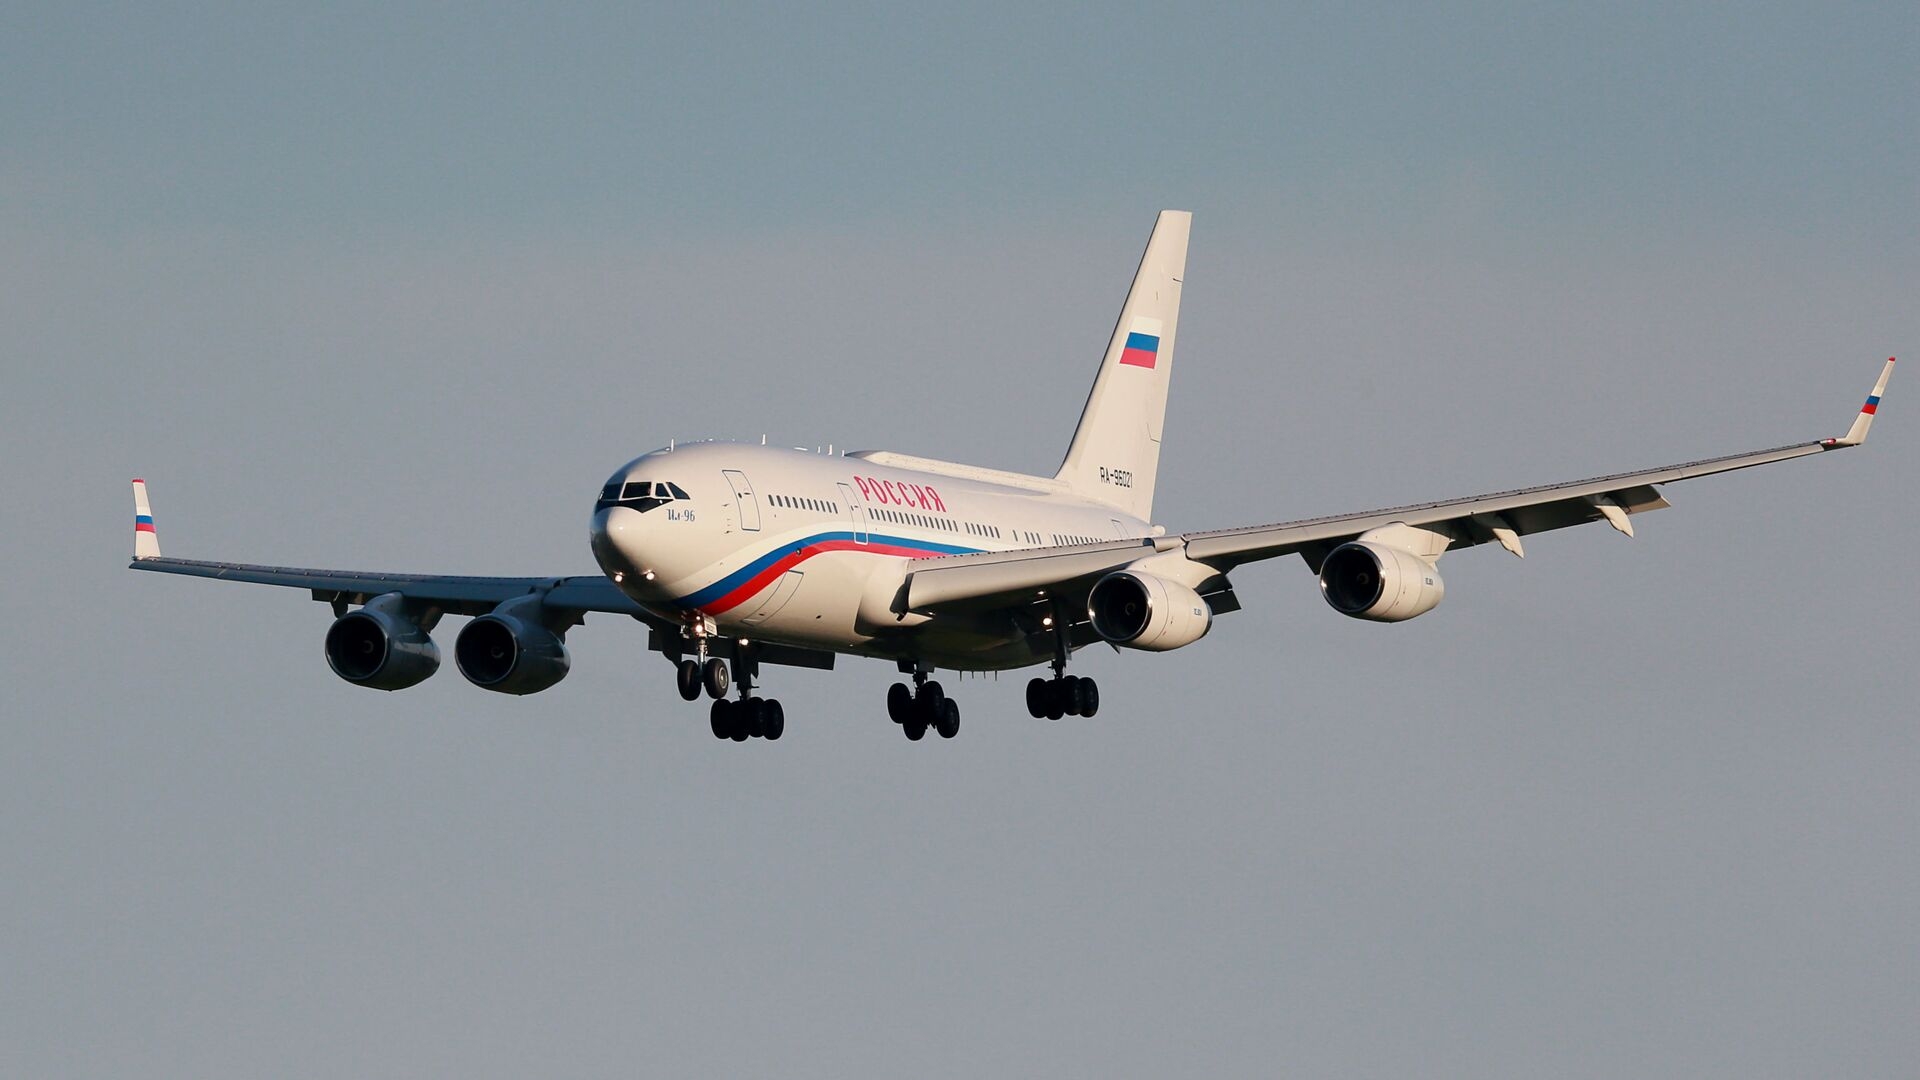 بلغارستان به هواپیمای حامل لاوروف اجازه عبور از حریم هوایی خود را نداد